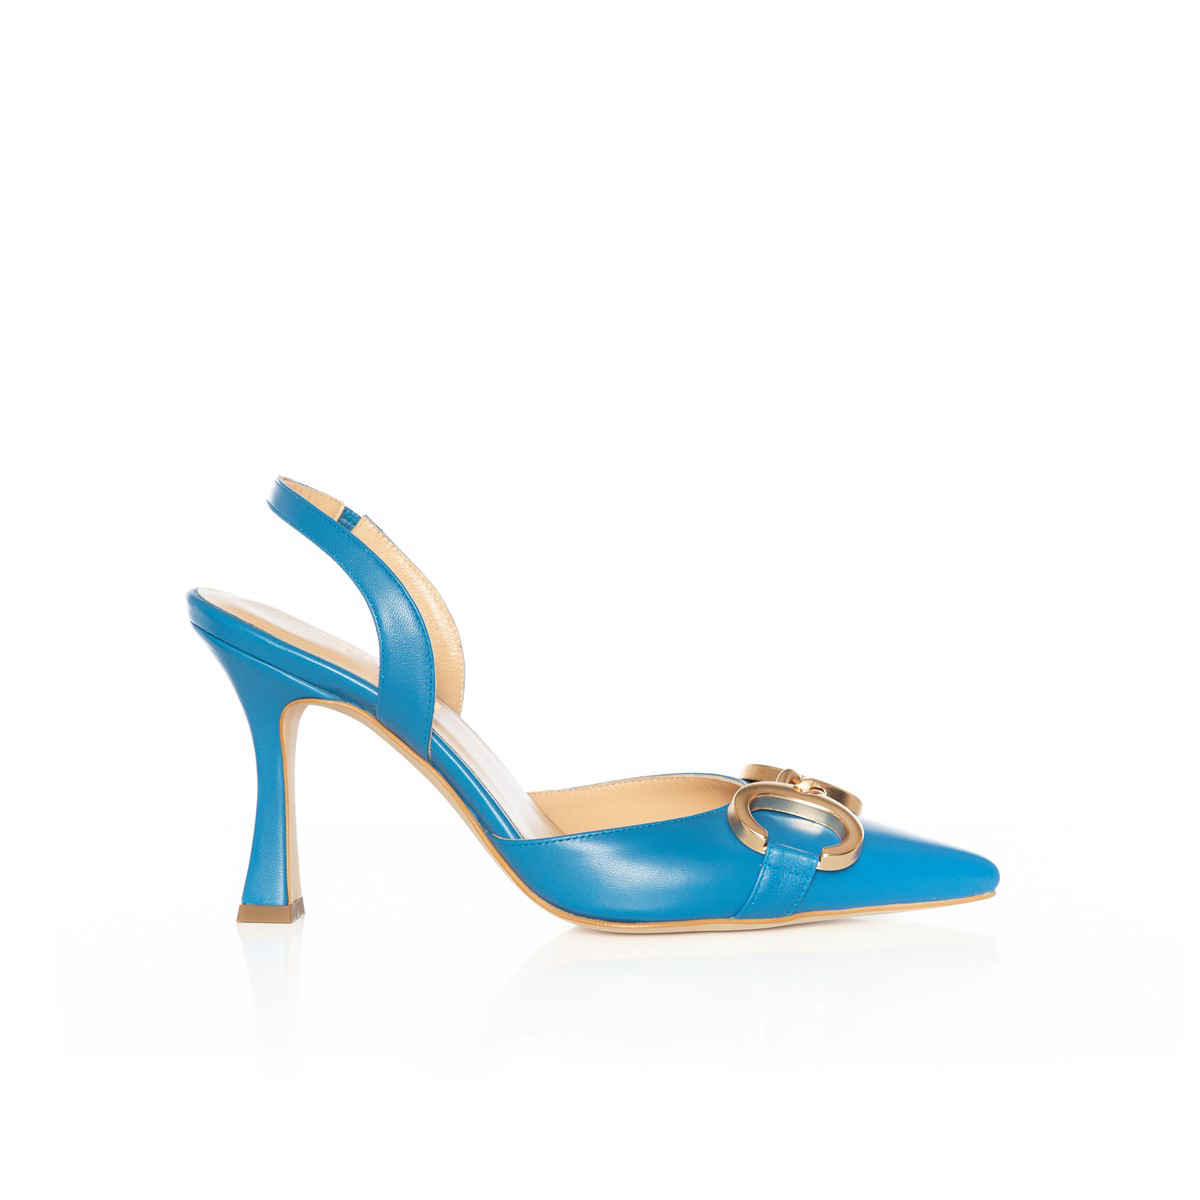 Matraş Kadın Topuklu Ayakkabı Mavi 9FF-1461